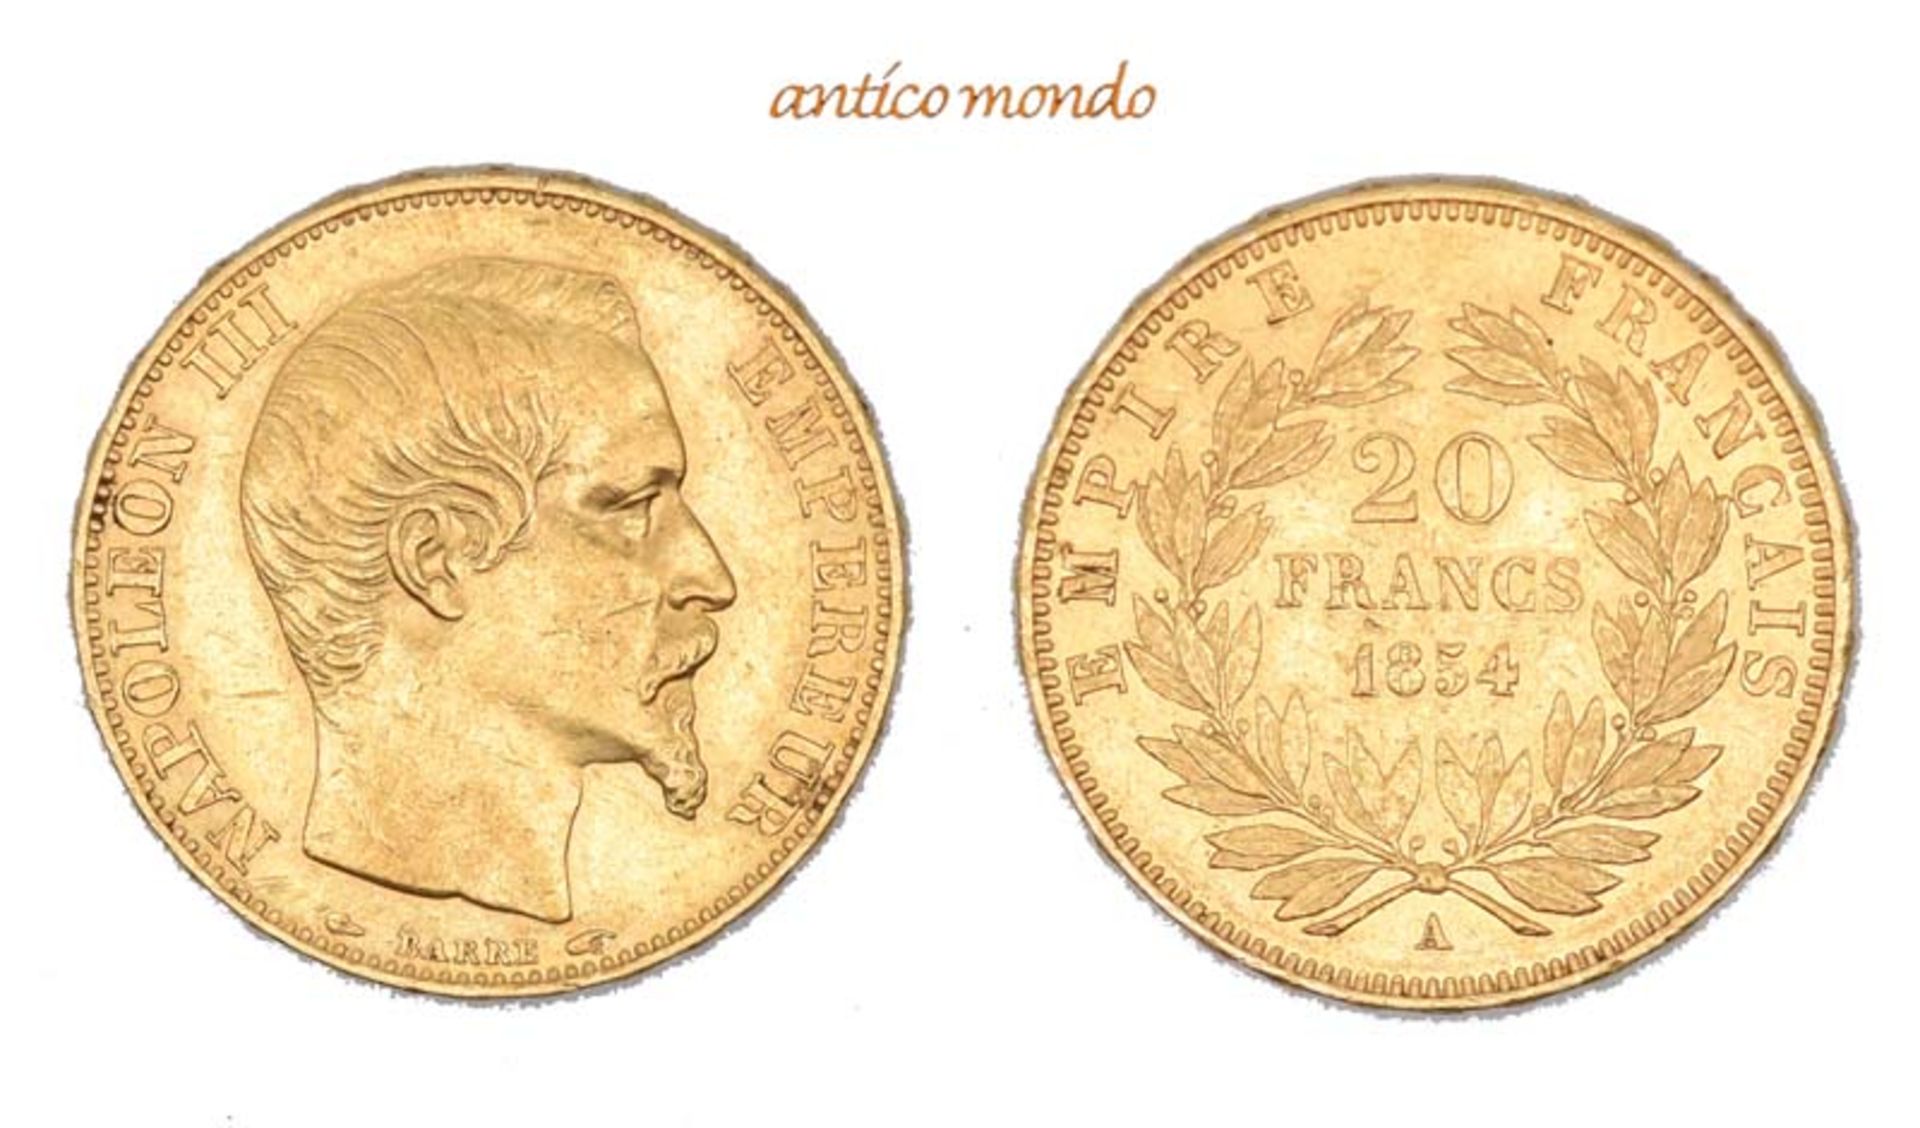 Frankreich, Napoleon III., 1848/1852-1870, 20 Francs, 1854, sehr schön-vorzüglich, 6,47 g- - -21.